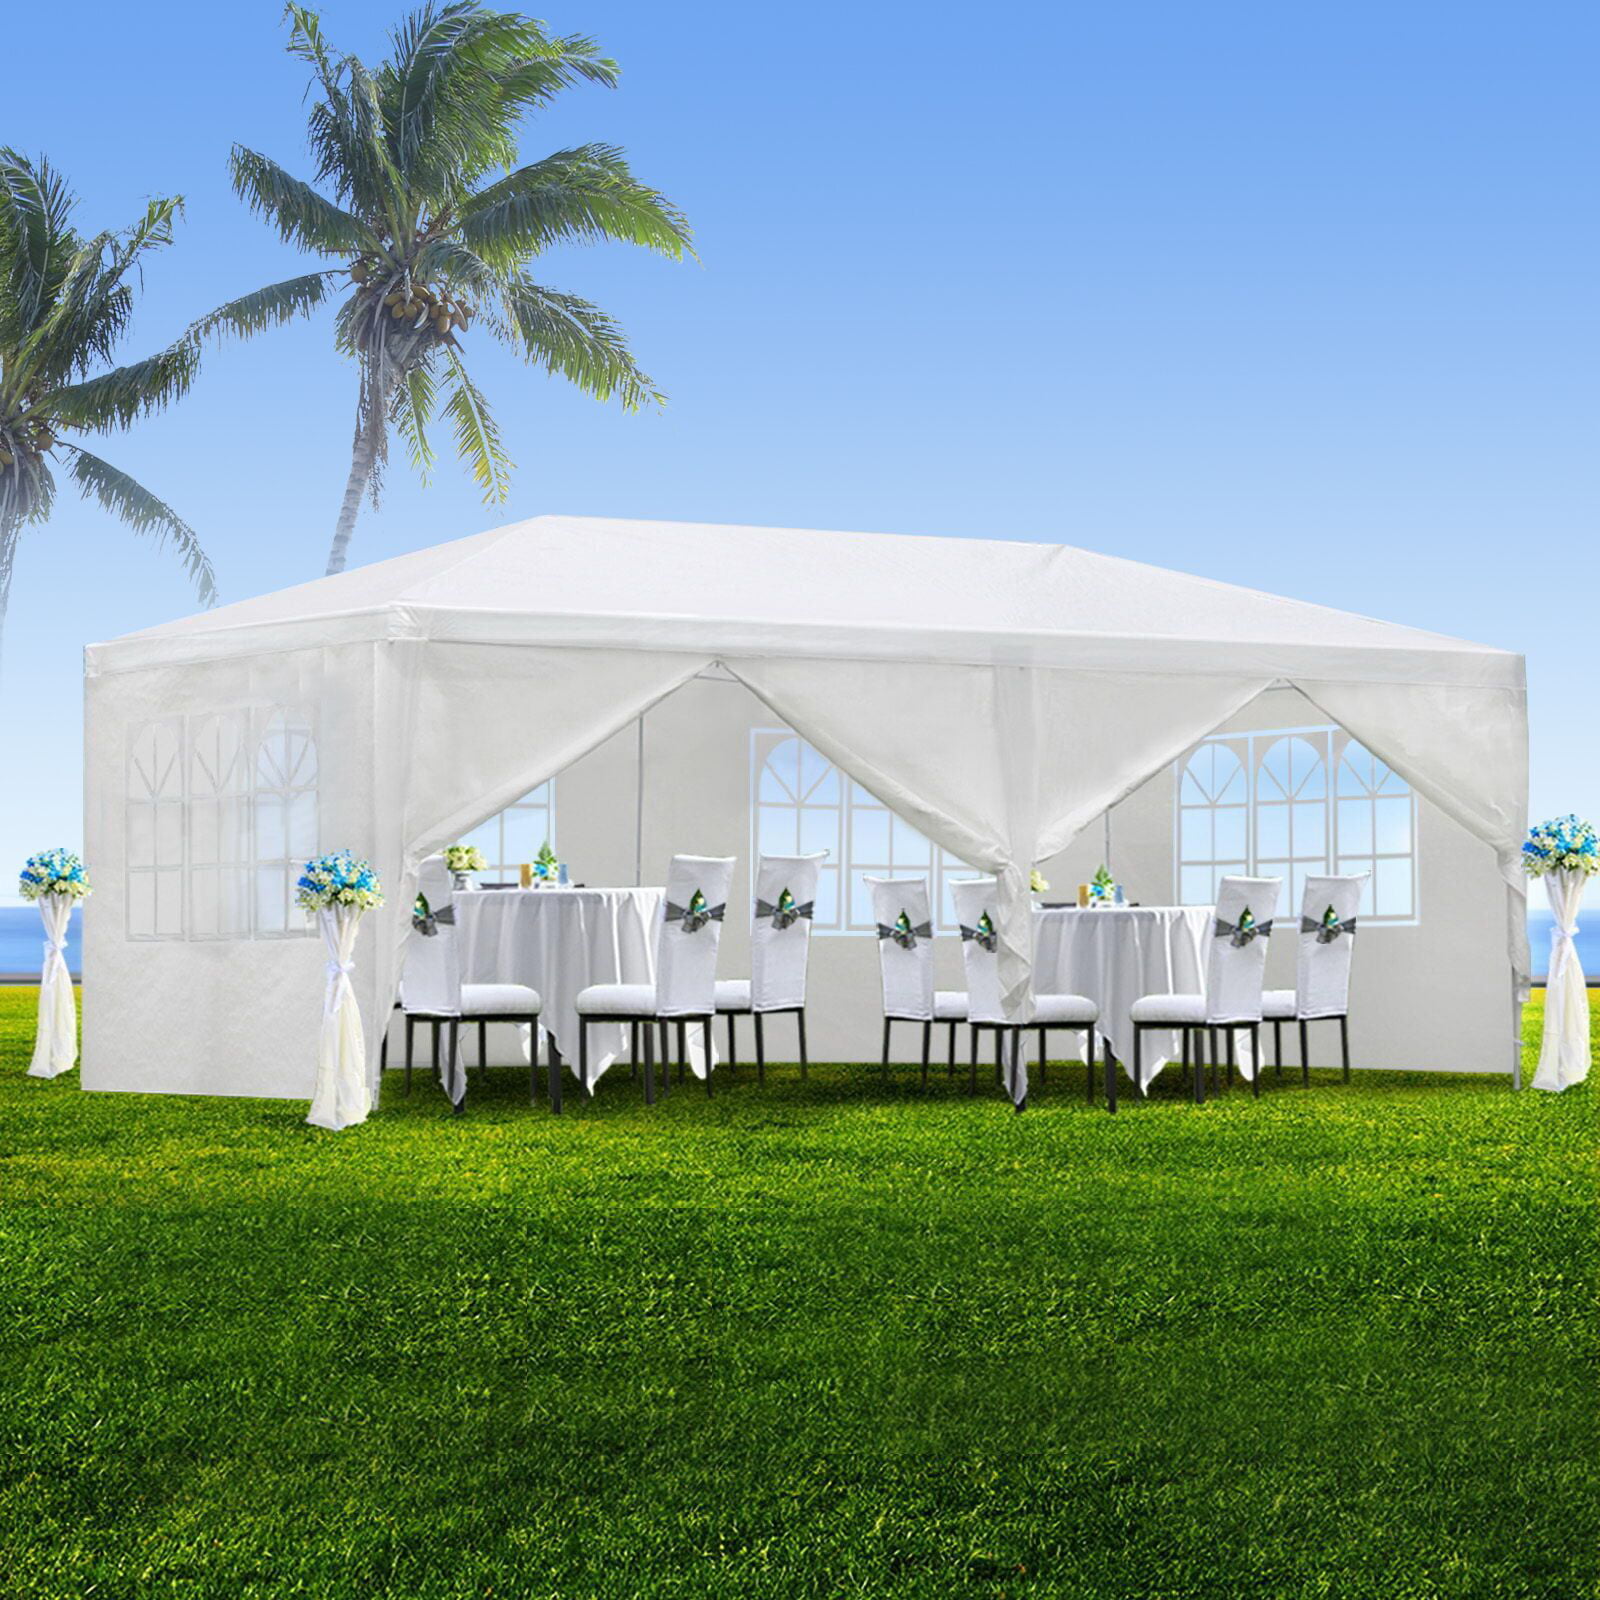 UBesGoo 10' x 20' Party Tent Wedding Canopy Gazebo Tent Pavilion w/6 ...